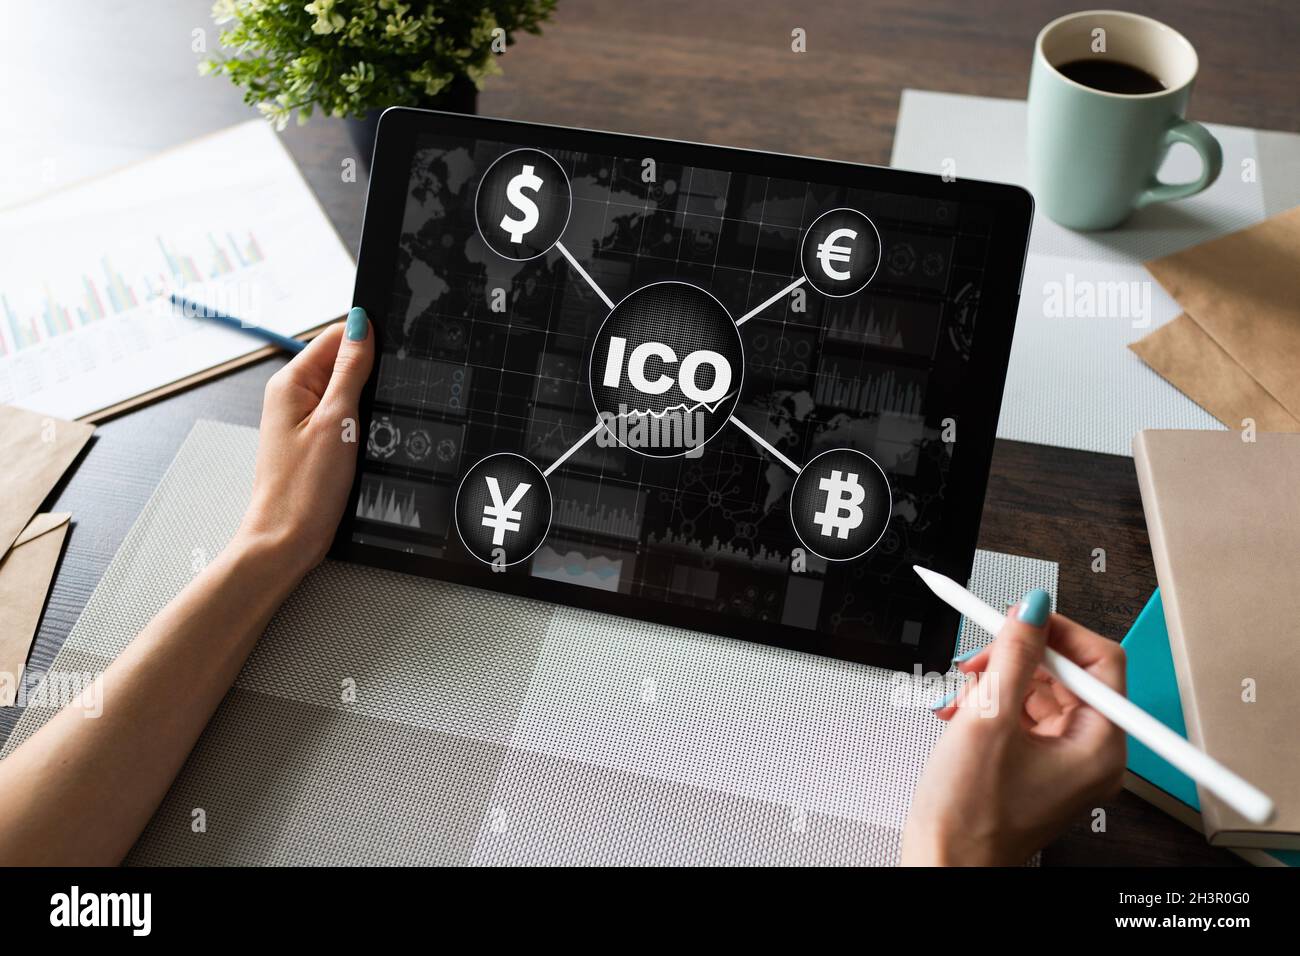 ICO - offre initiale de pièces. Concept de la technologie financière et de la blockchain. Banque D'Images